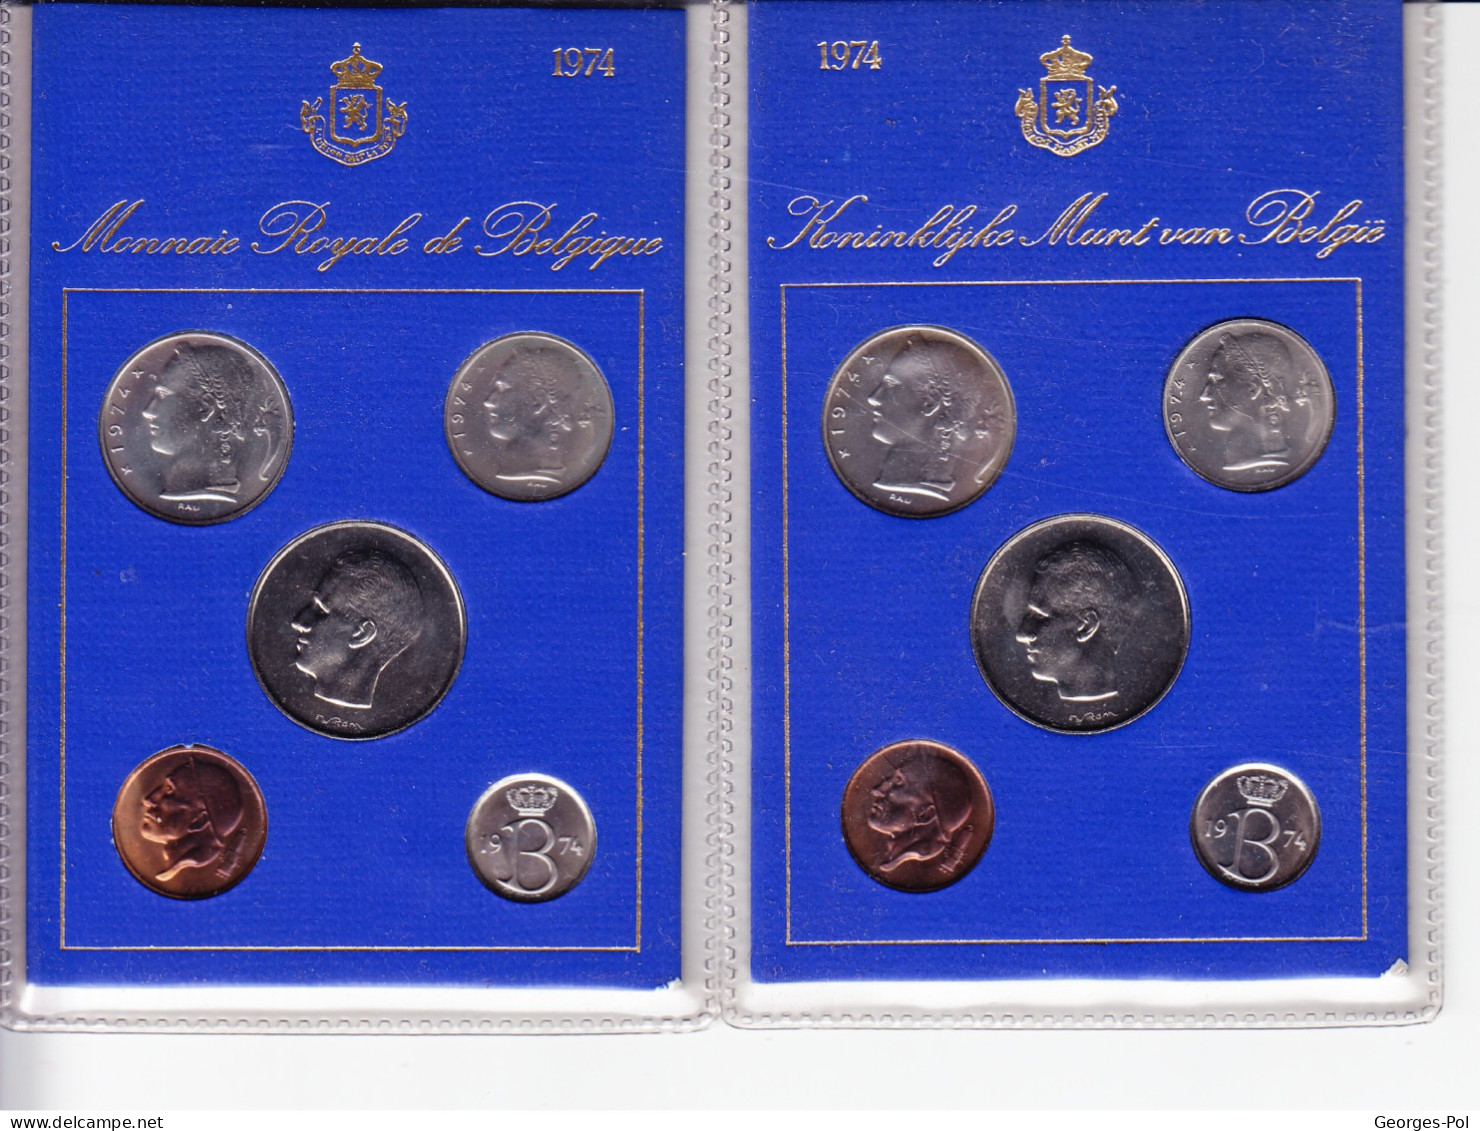 Monnaie Royale De Belgique 1974 Koninklijke Munt Van België. 2 Cartes De 5 Pièces Non Circulées - FDC, BU, BE & Coffrets